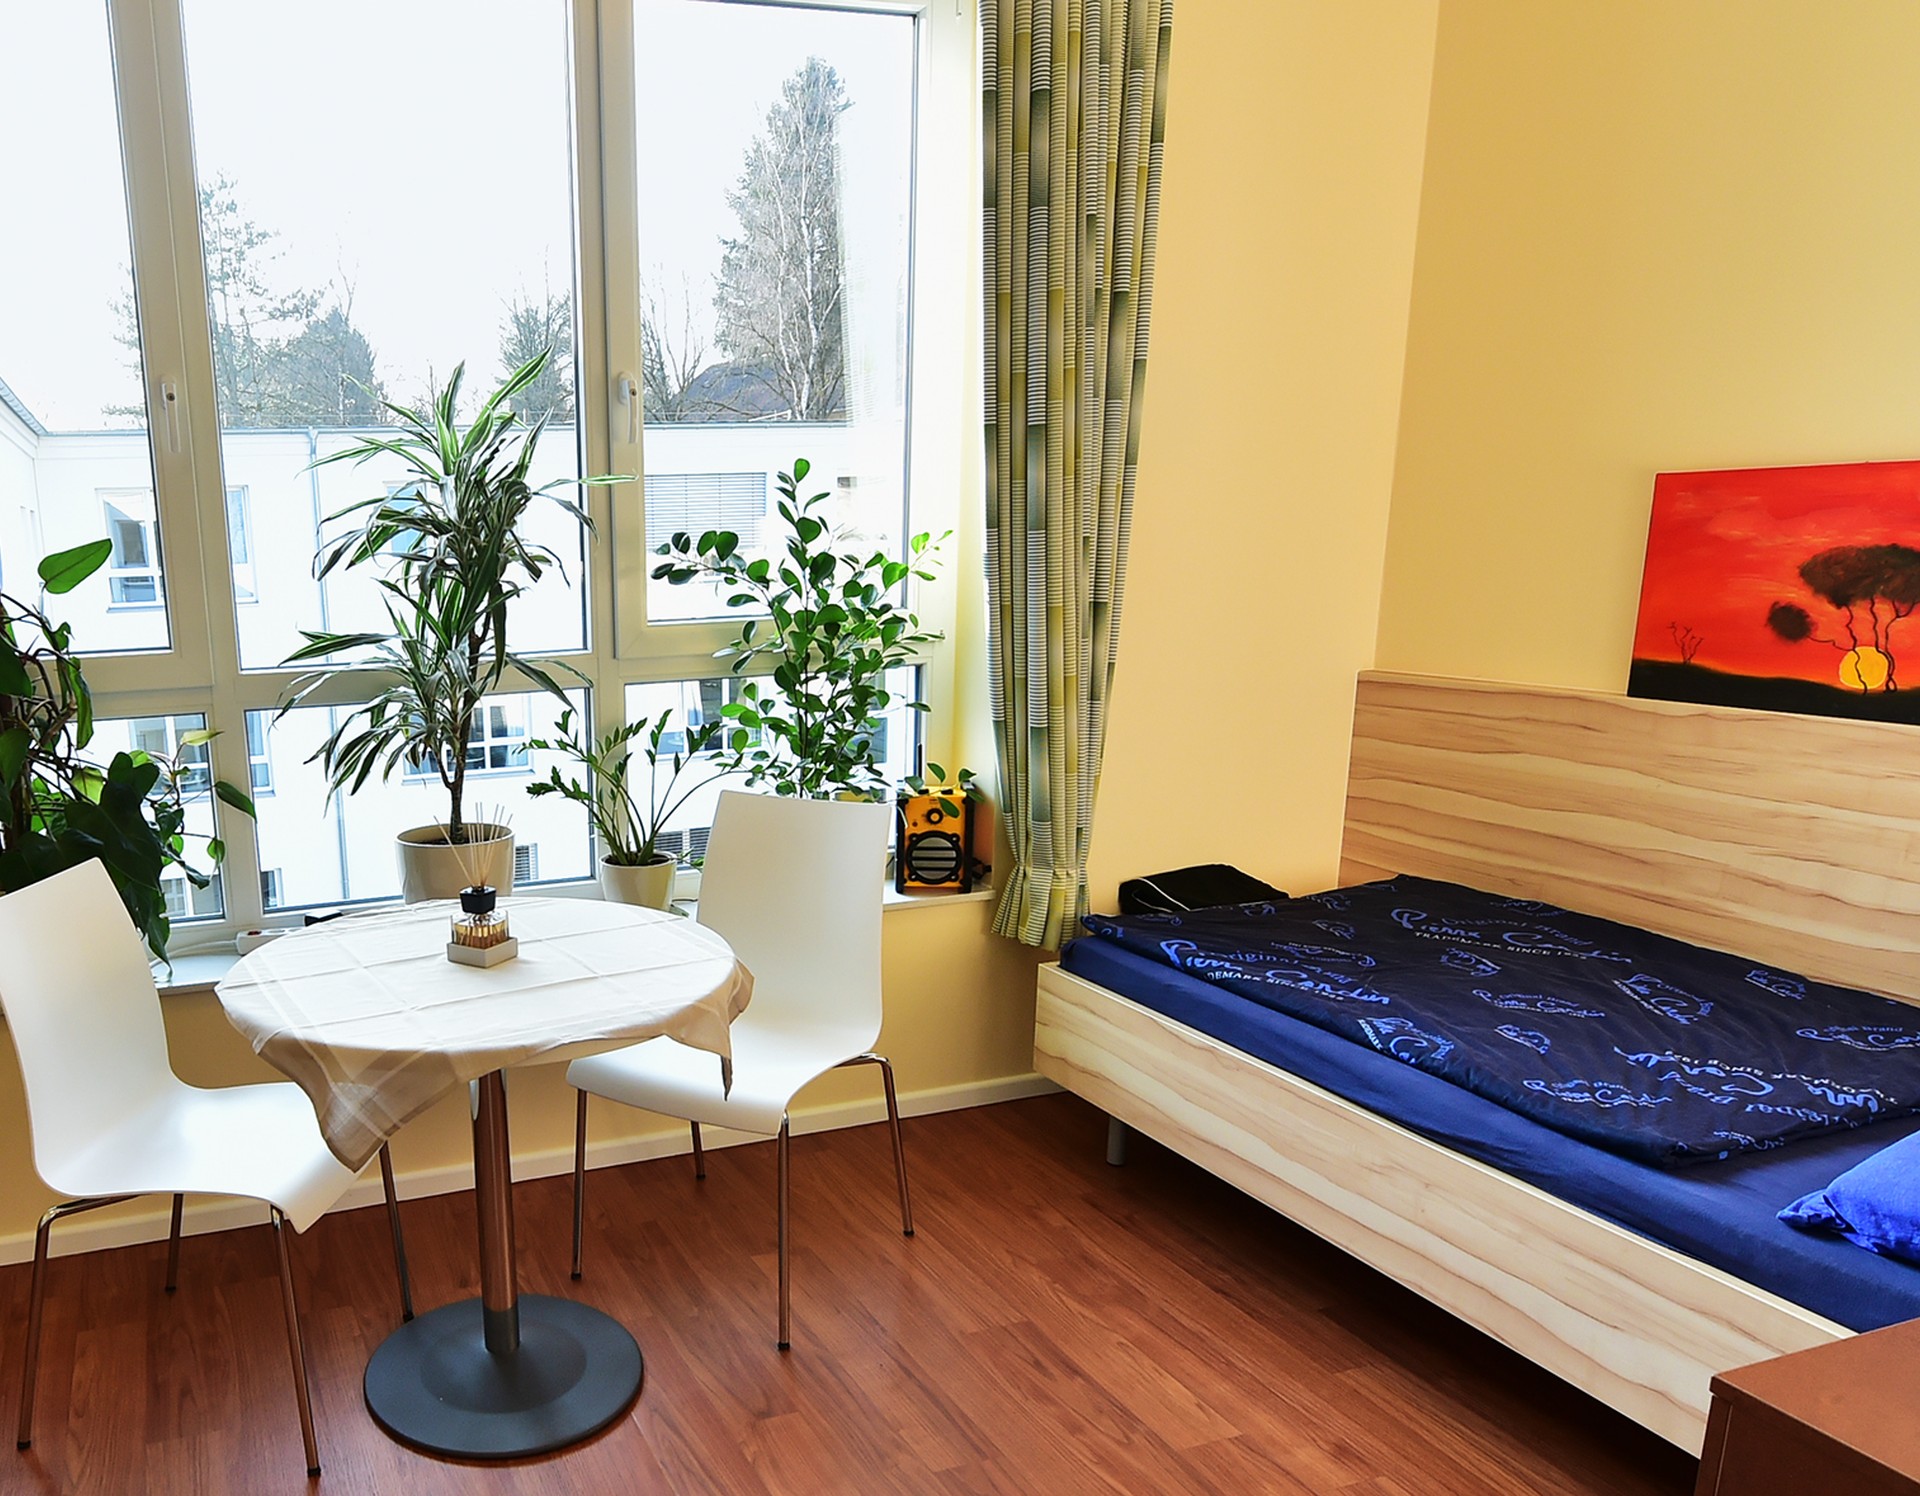 Ein Einzelzimmer der Sucht-Reha mit einem Bett, einer Sitzecke, einem großen Fenster und Bepflanzung